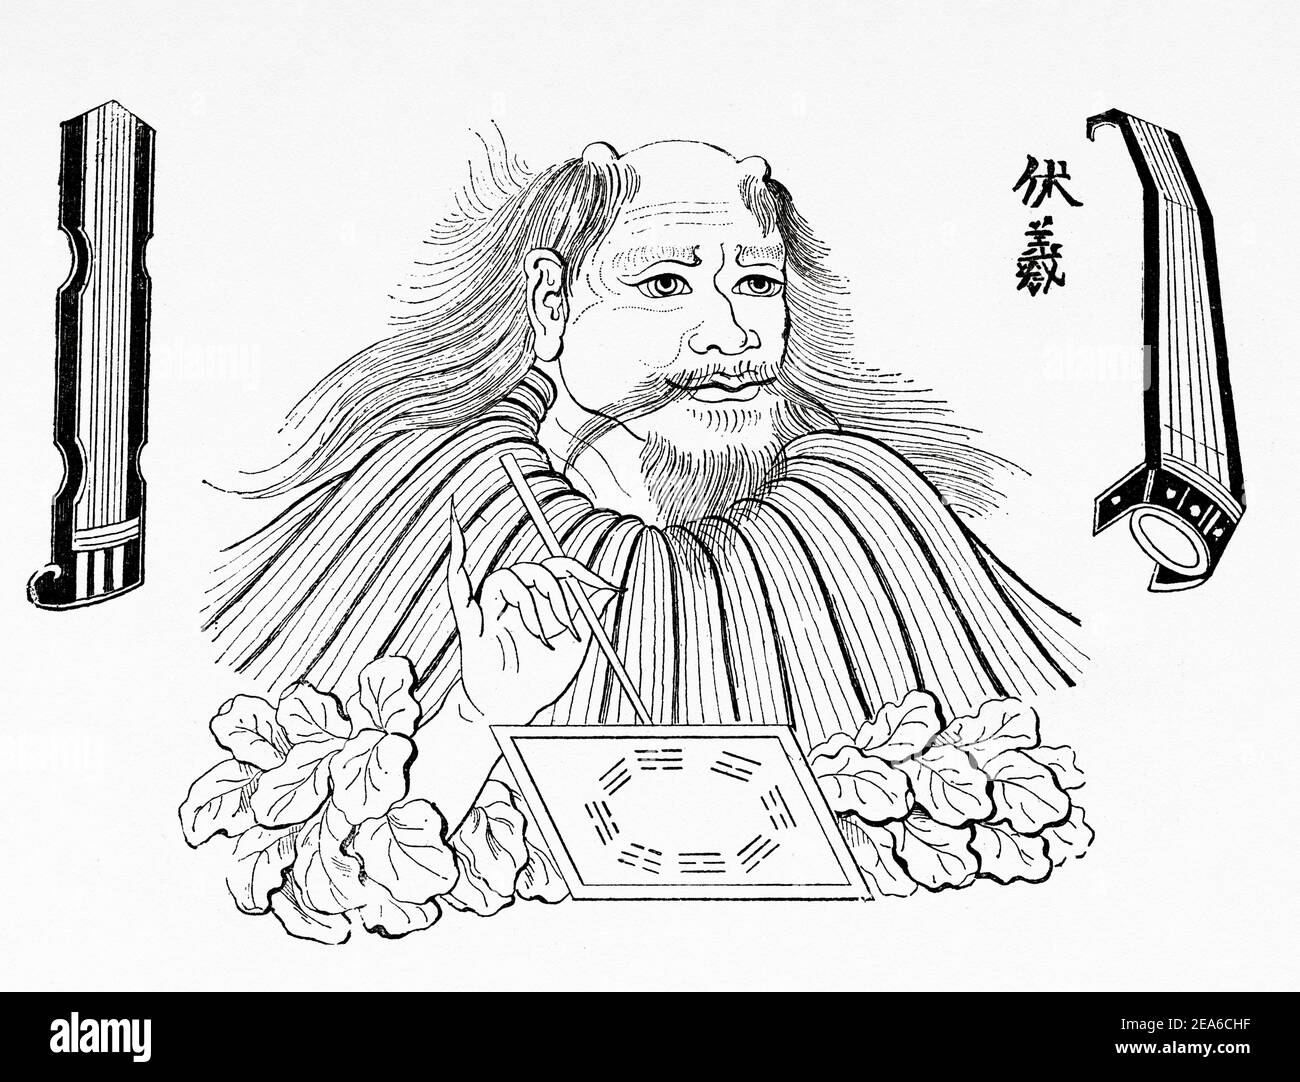 Chinesischer gott der Erfindungen. Fuxi und die von ihm erfundenen Musikinstrumente. Er war der erste der legendären San Huang. Alte Geschichte Chinas. Alte 19th Jahrhundert gravierte Illustration von El Mundo Ilustrado 1879 Stockfoto